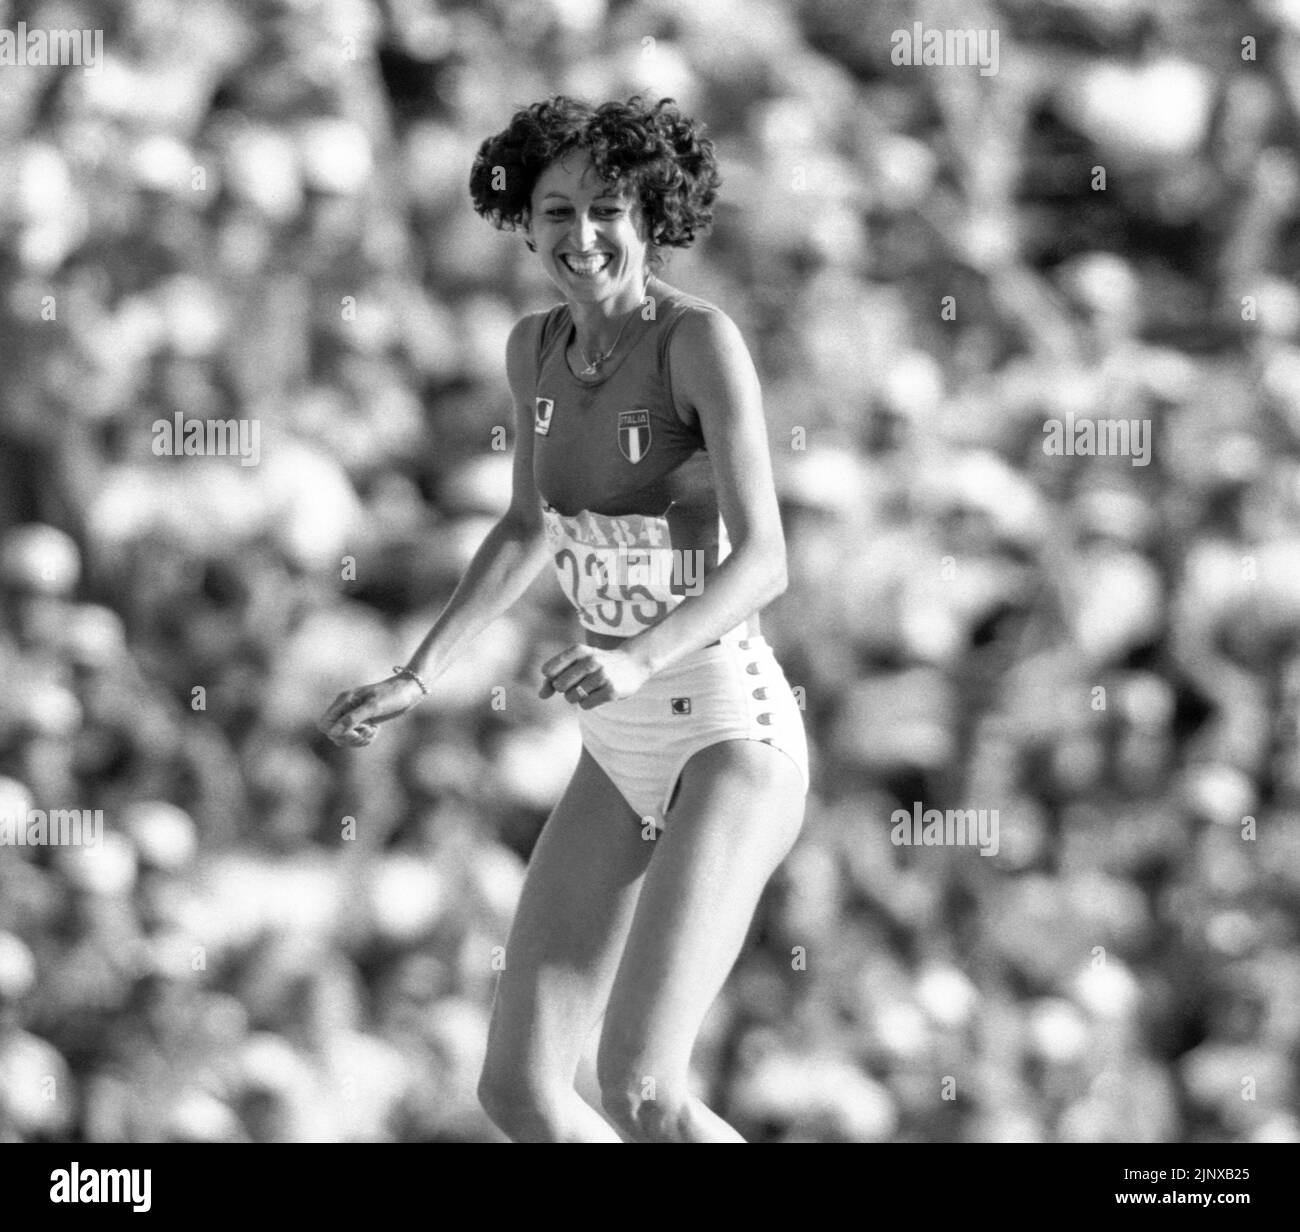 JUEGOS OLÍMPICOS DE VERANO EN LOS ÁNGELES 1984 SARA SIMEONI Italia medallista de plata de salto alto Foto de stock